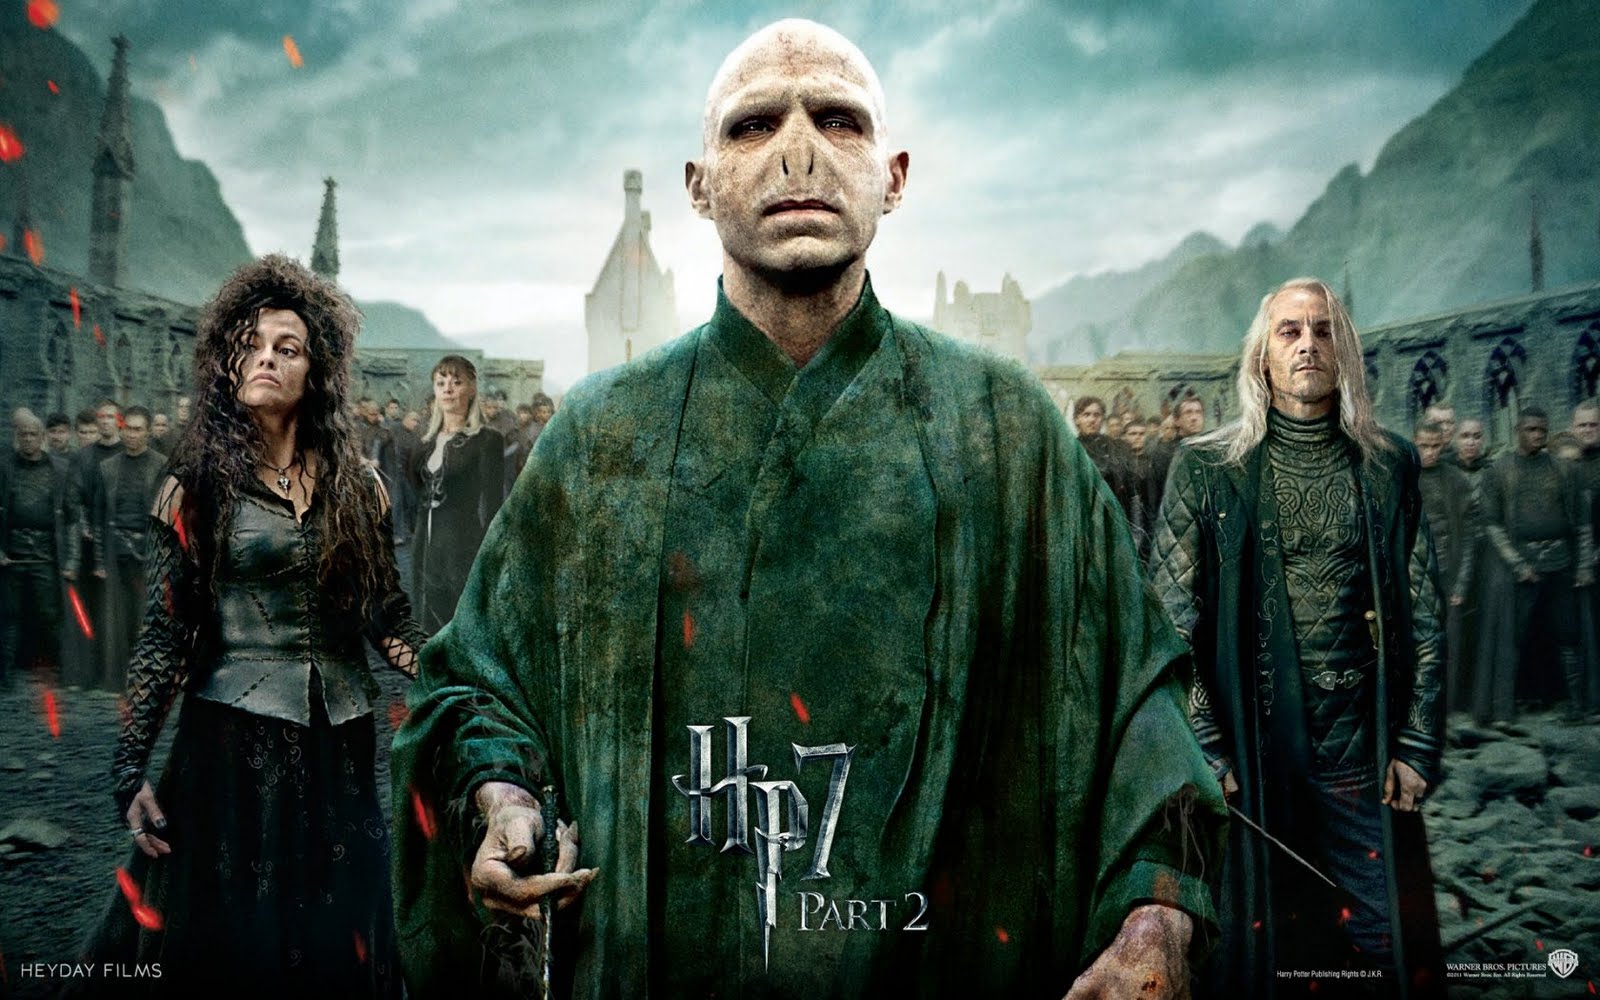 http://1.bp.blogspot.com/-pp0JON2J-HA/Tih0-vrebaI/AAAAAAAABps/vkqO3mGJPT8/s1600/Harry+Potter-7-part-2-Voldemort.jpg